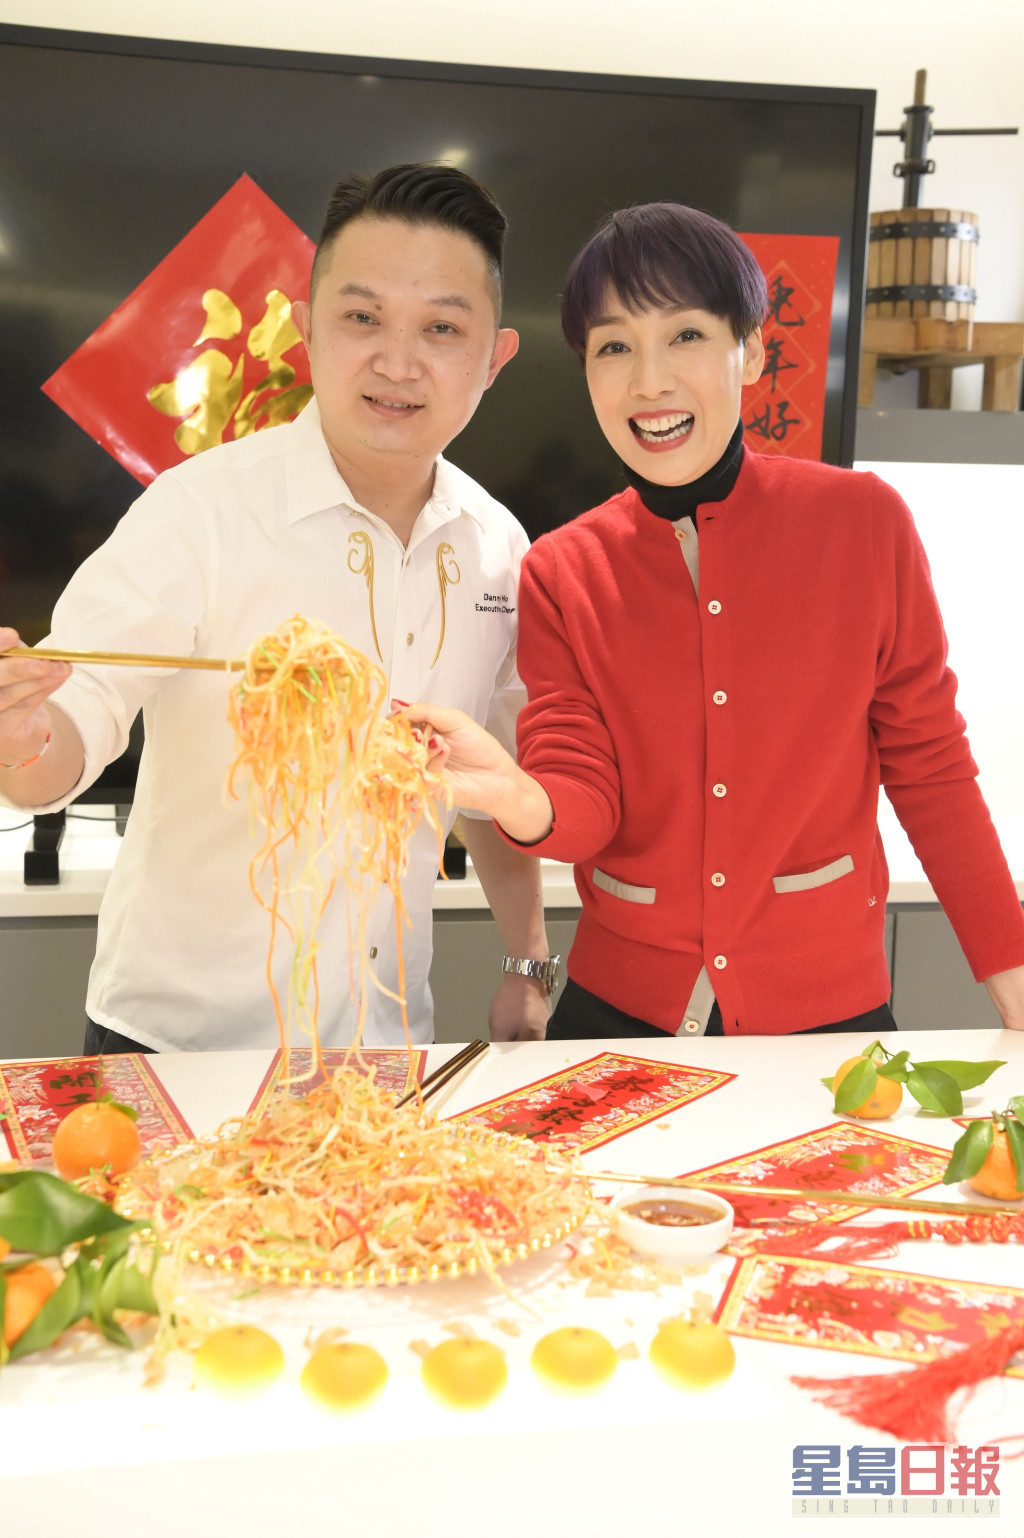 江美仪酒店行政总厨「榴连王子」Danny一起准备马来西亚地道食品「捞起」。